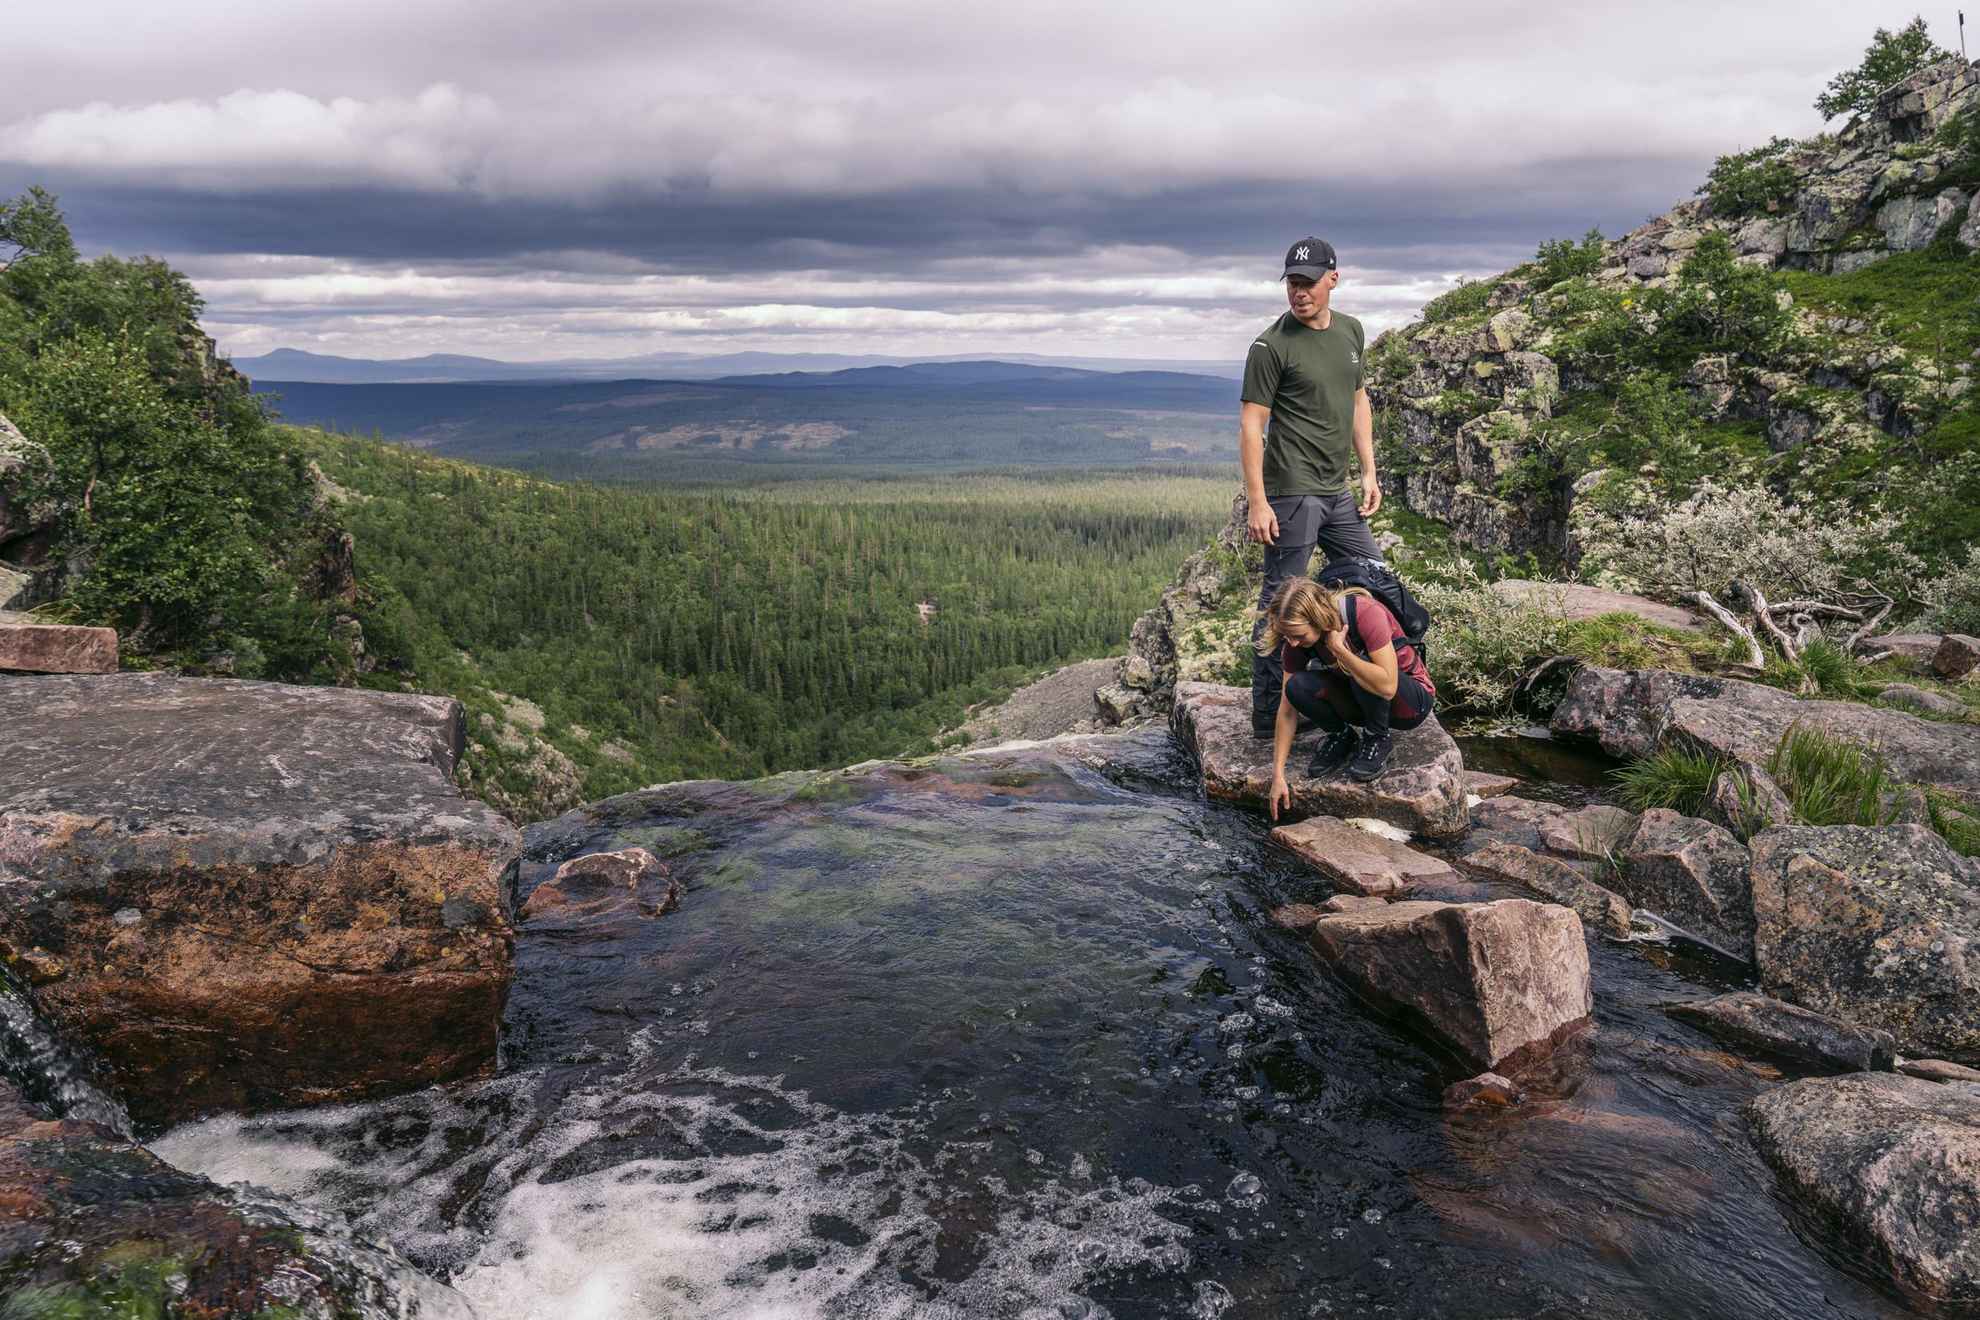 Eine Frau sitzt in der Hocke und ein Mann steht neben einer Quelle in den Bergen.Wälder und Berge befinden sich im Hintergrund.